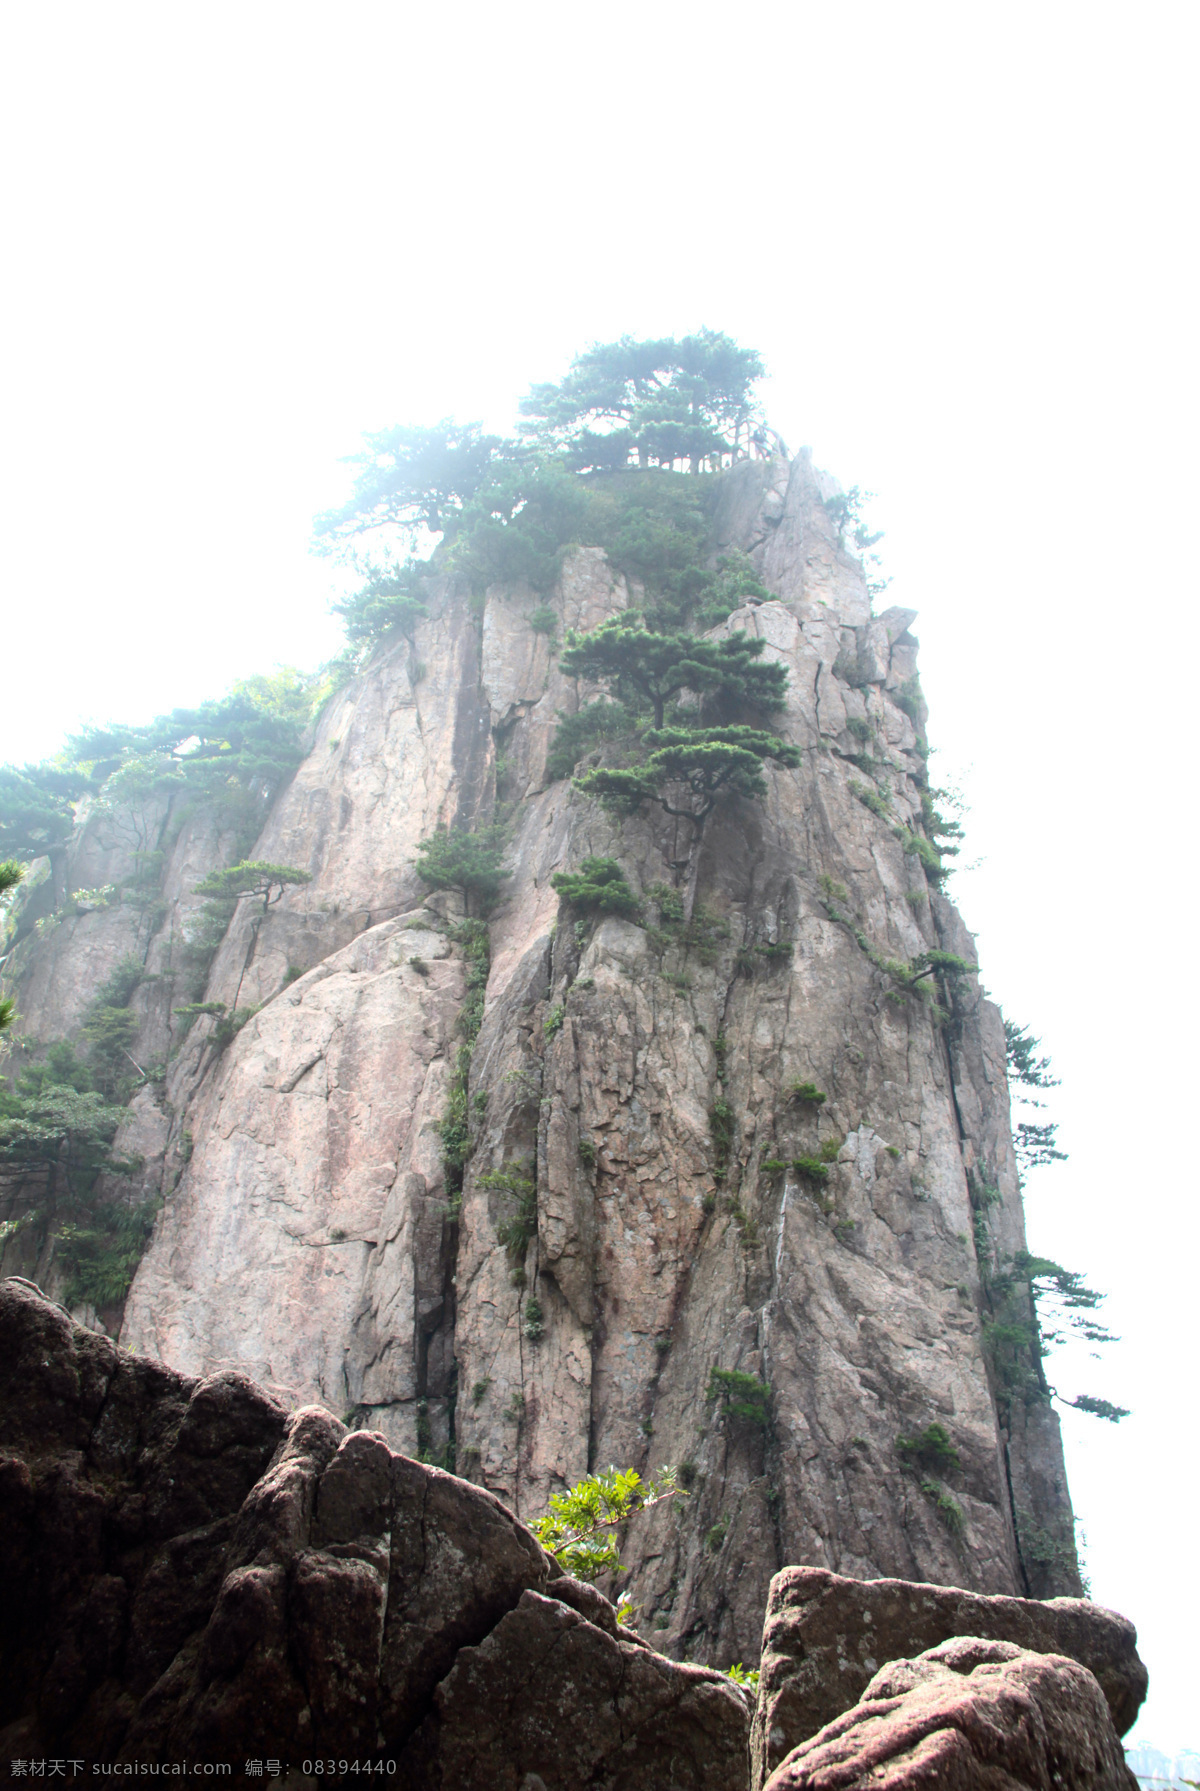 山石峭壁 云石 奇石 怪石 云雾缭绕 山中弥漫 黄山奇景 旅游摄影 自然风景